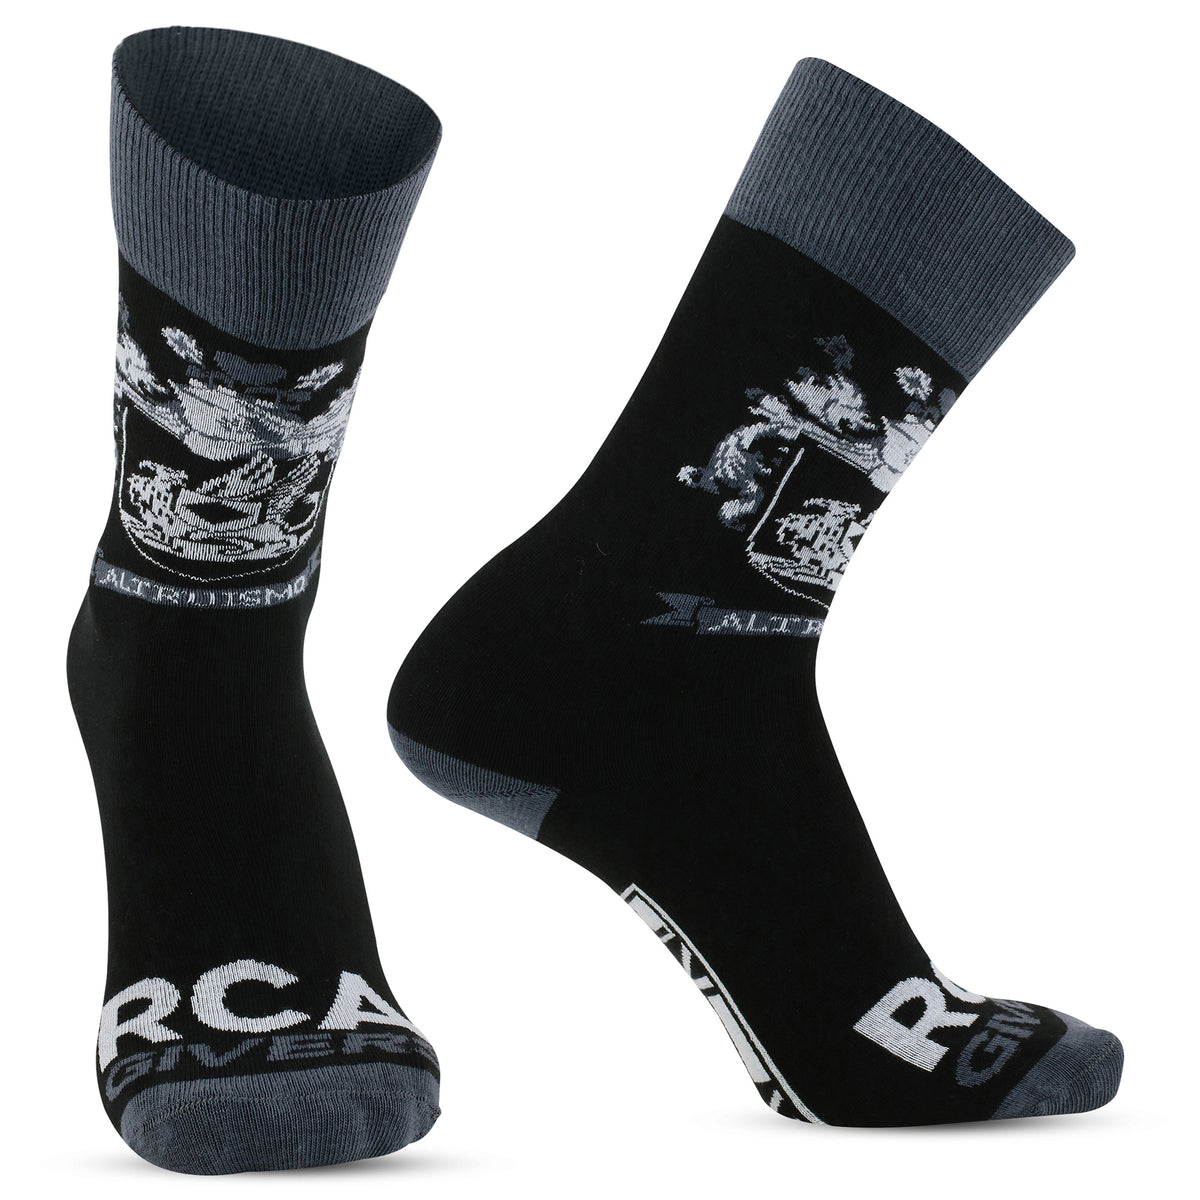 House Crest Socks – The Ron Clark Academy